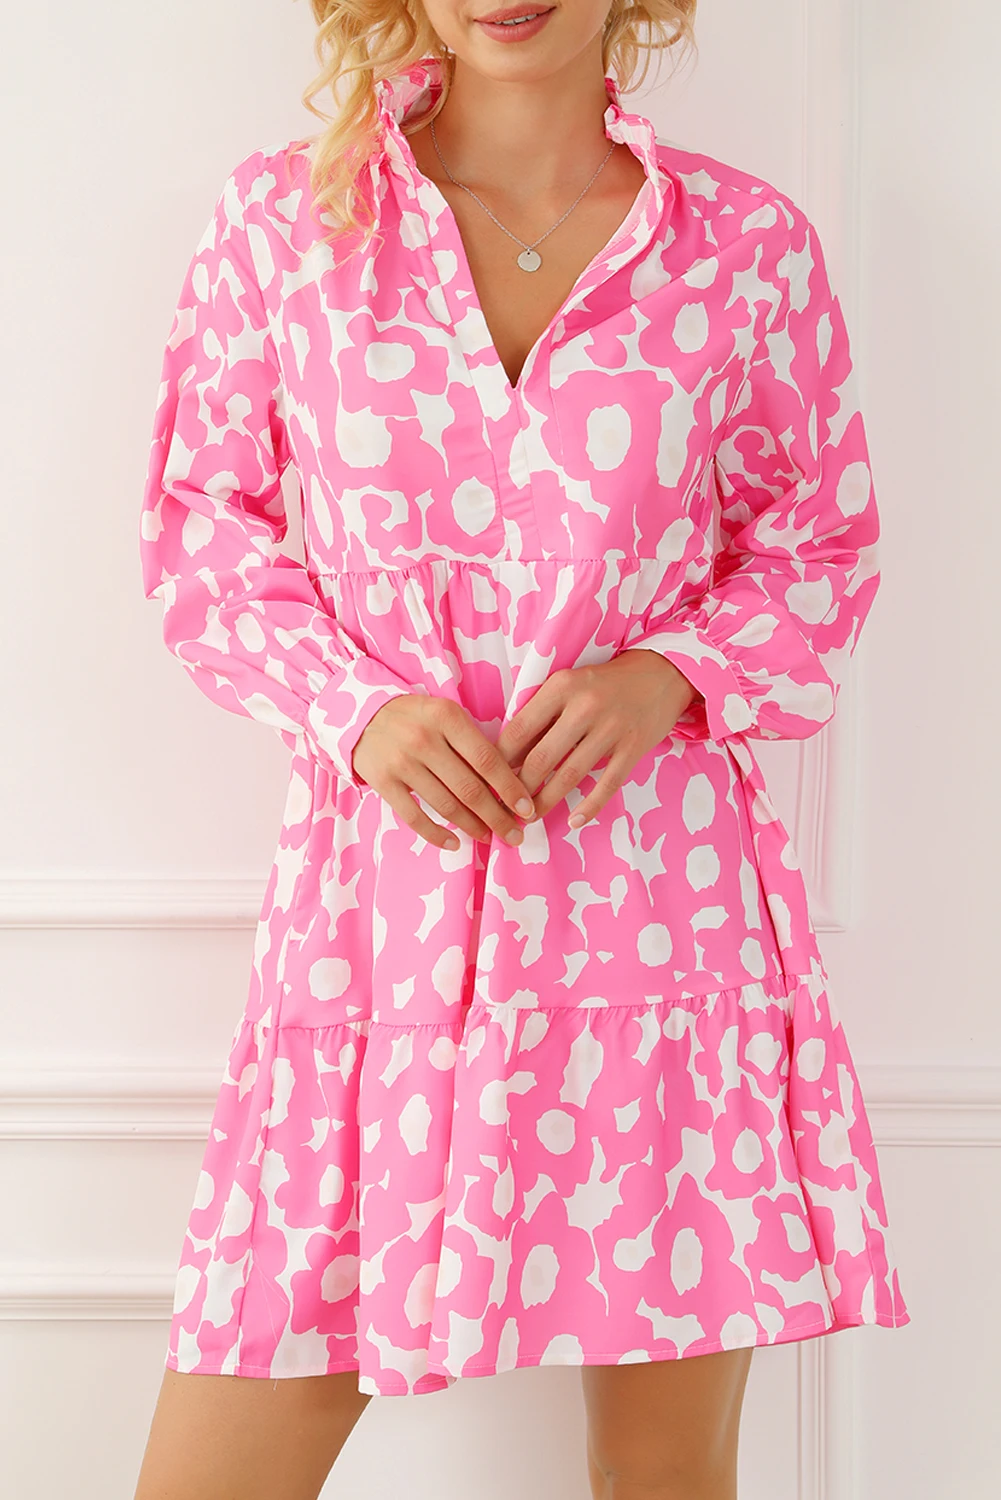 Dear-Lover Light Pink Sweet Flower Print Tiered Ruffled Trim Flower Short Dress For Women